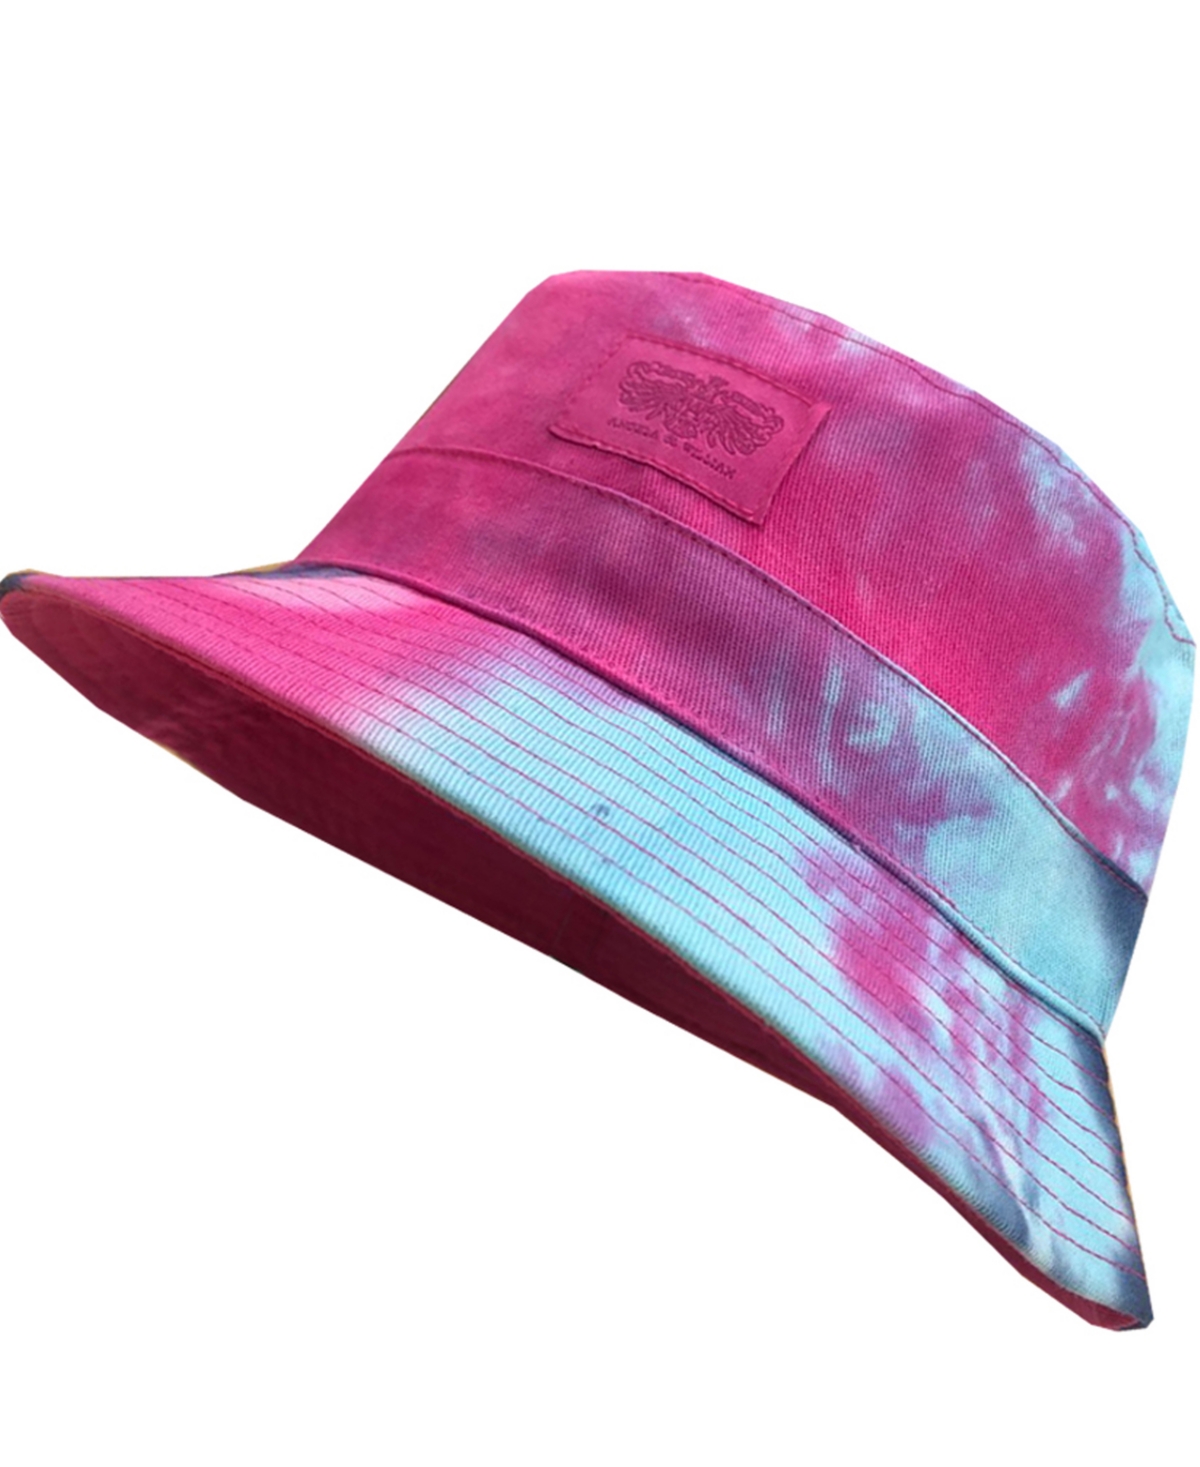 Angela & William Unisex Tie Dye Double Side Wear Reversible Bucket Hat In Mix Hot Pink